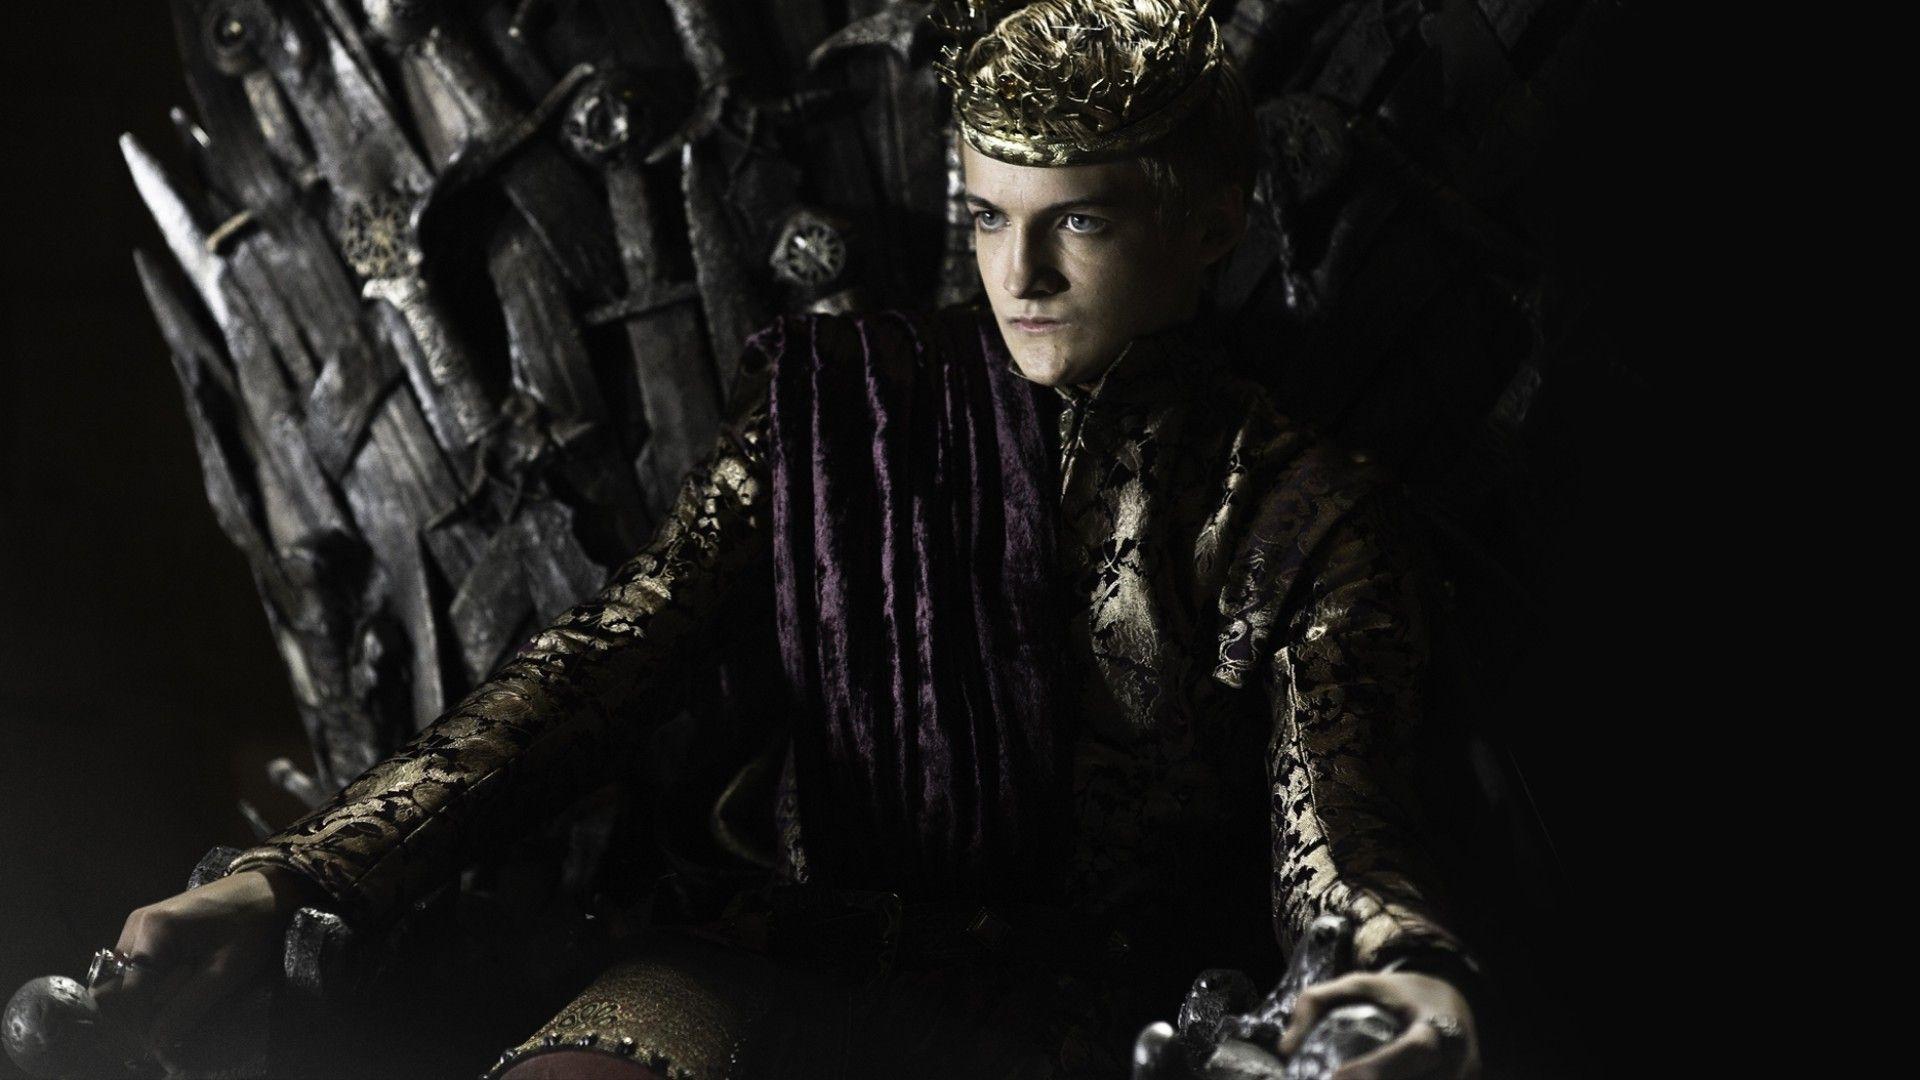 Wallpaper, Game of Thrones, Iron Throne, Joffrey Baratheon